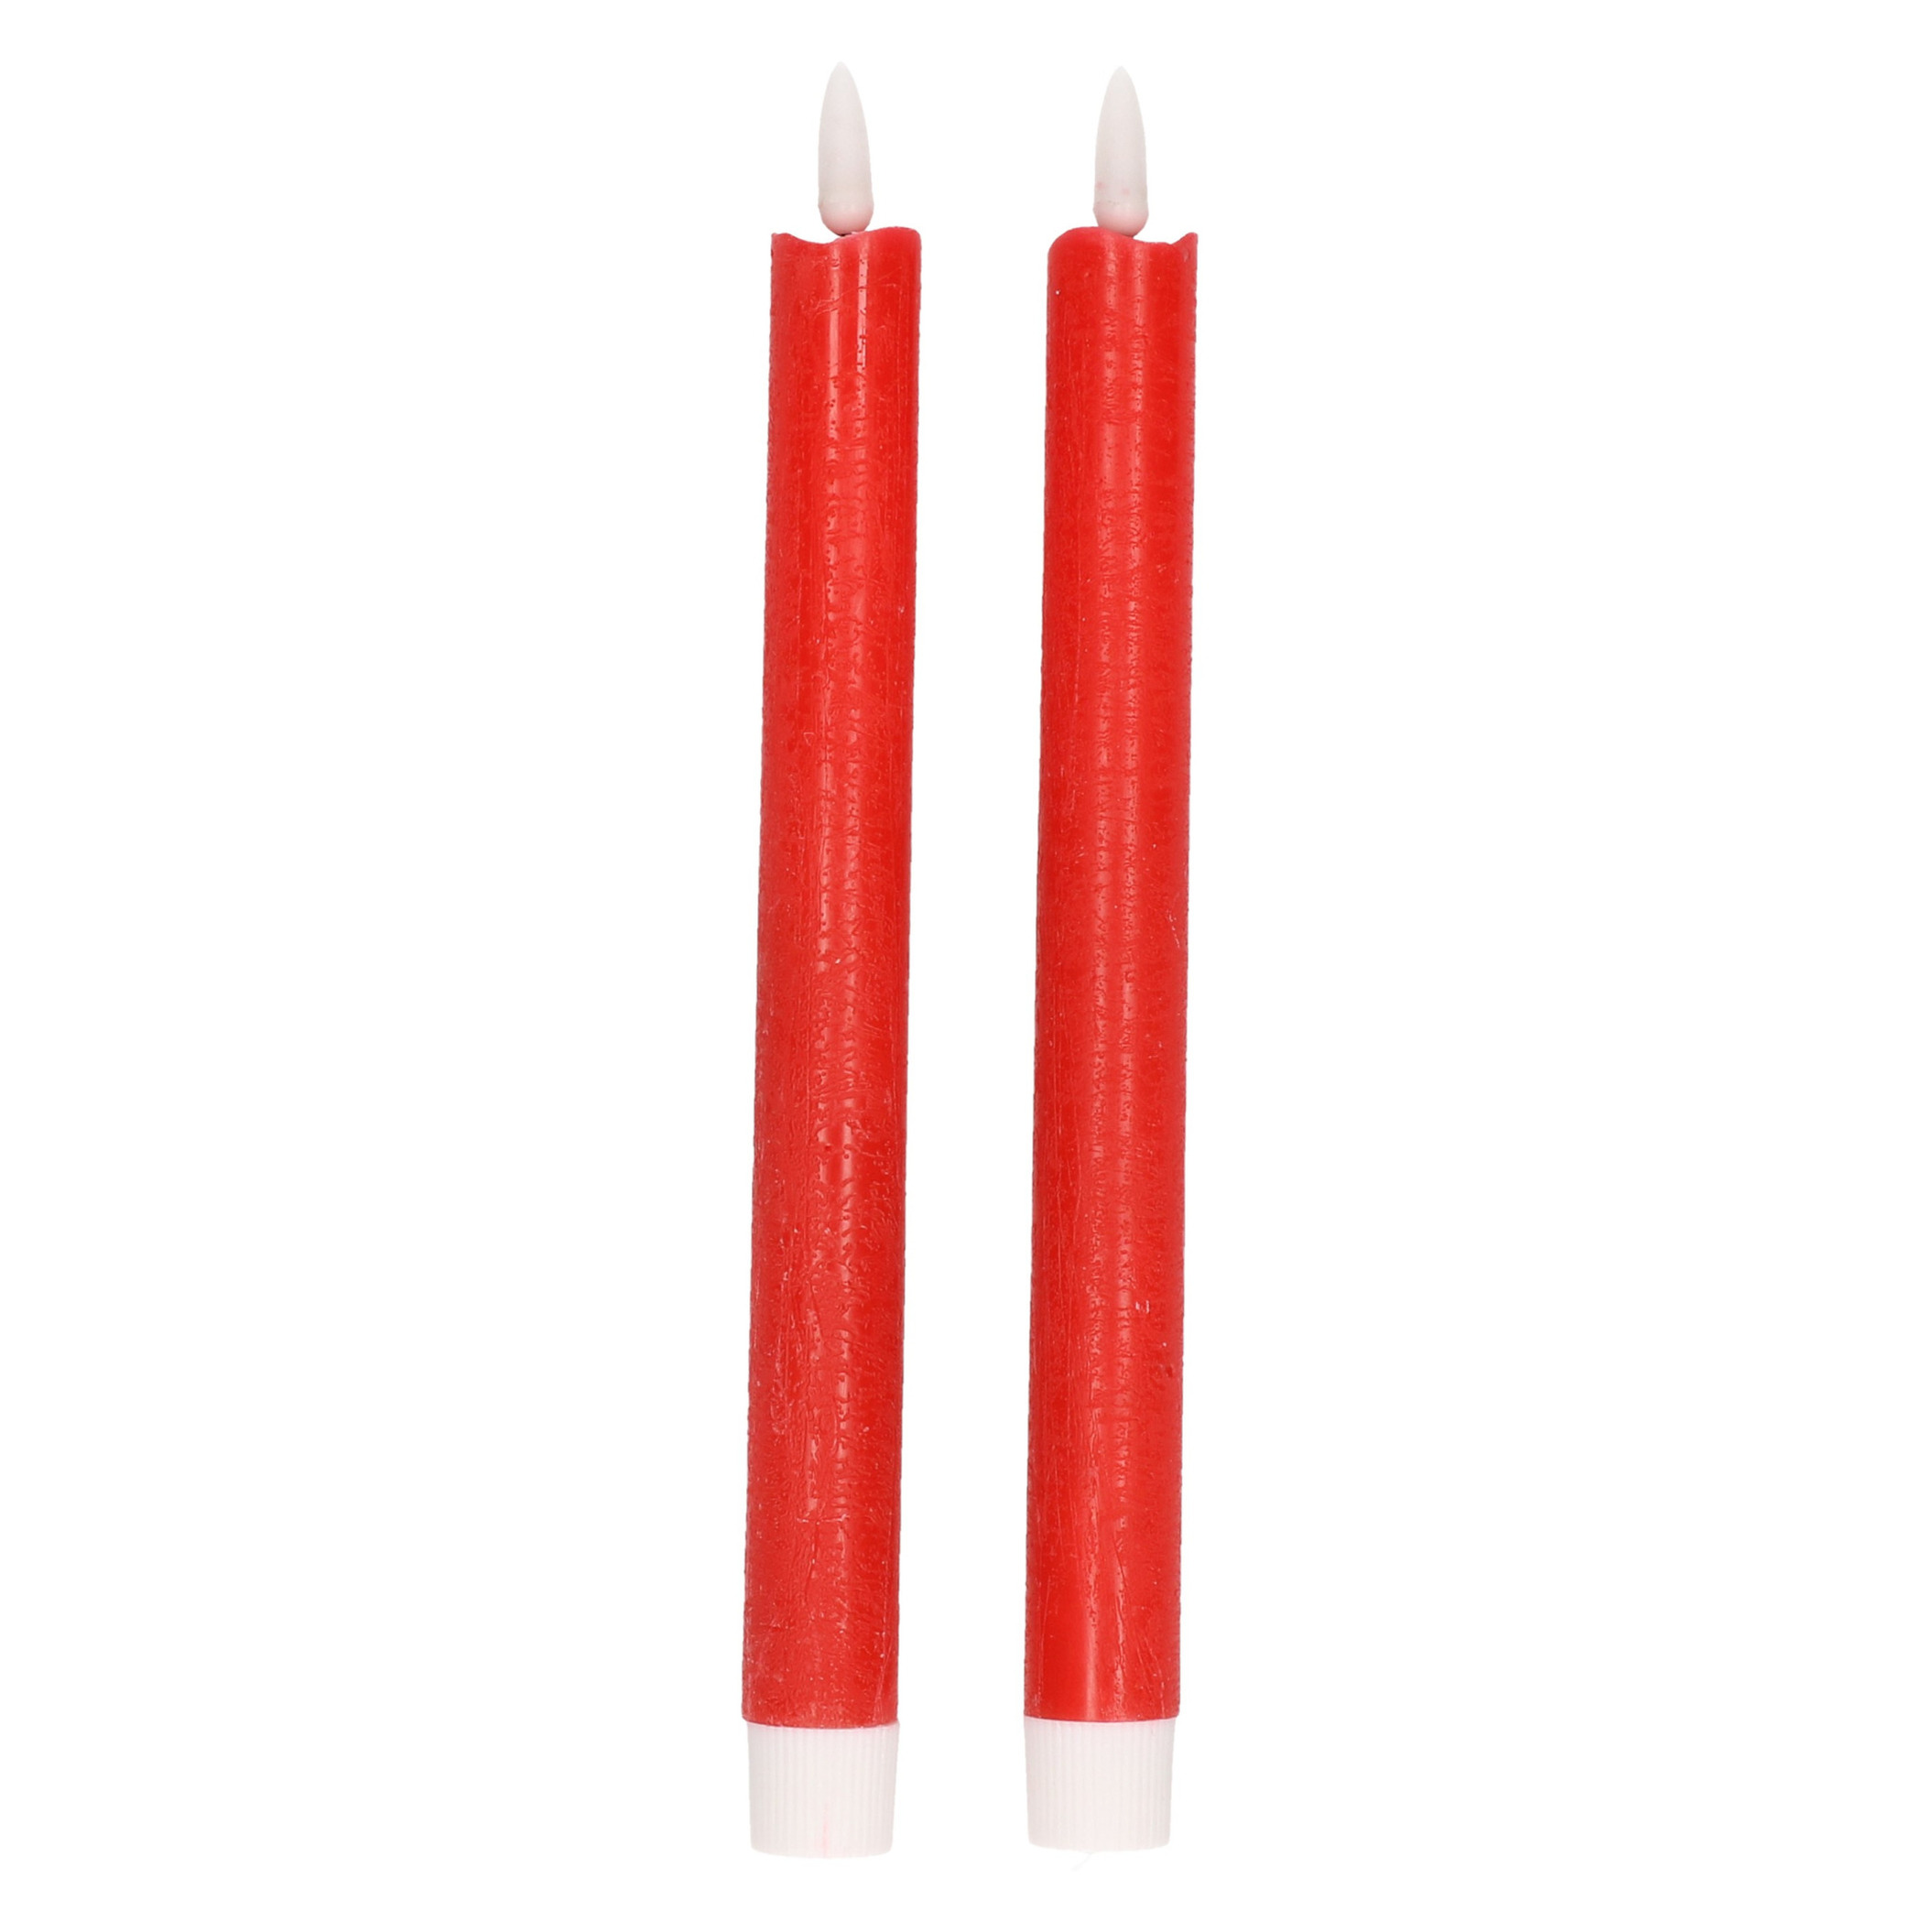 2x Rode LED kaarsen/dinerkaarsen 25,5 cm